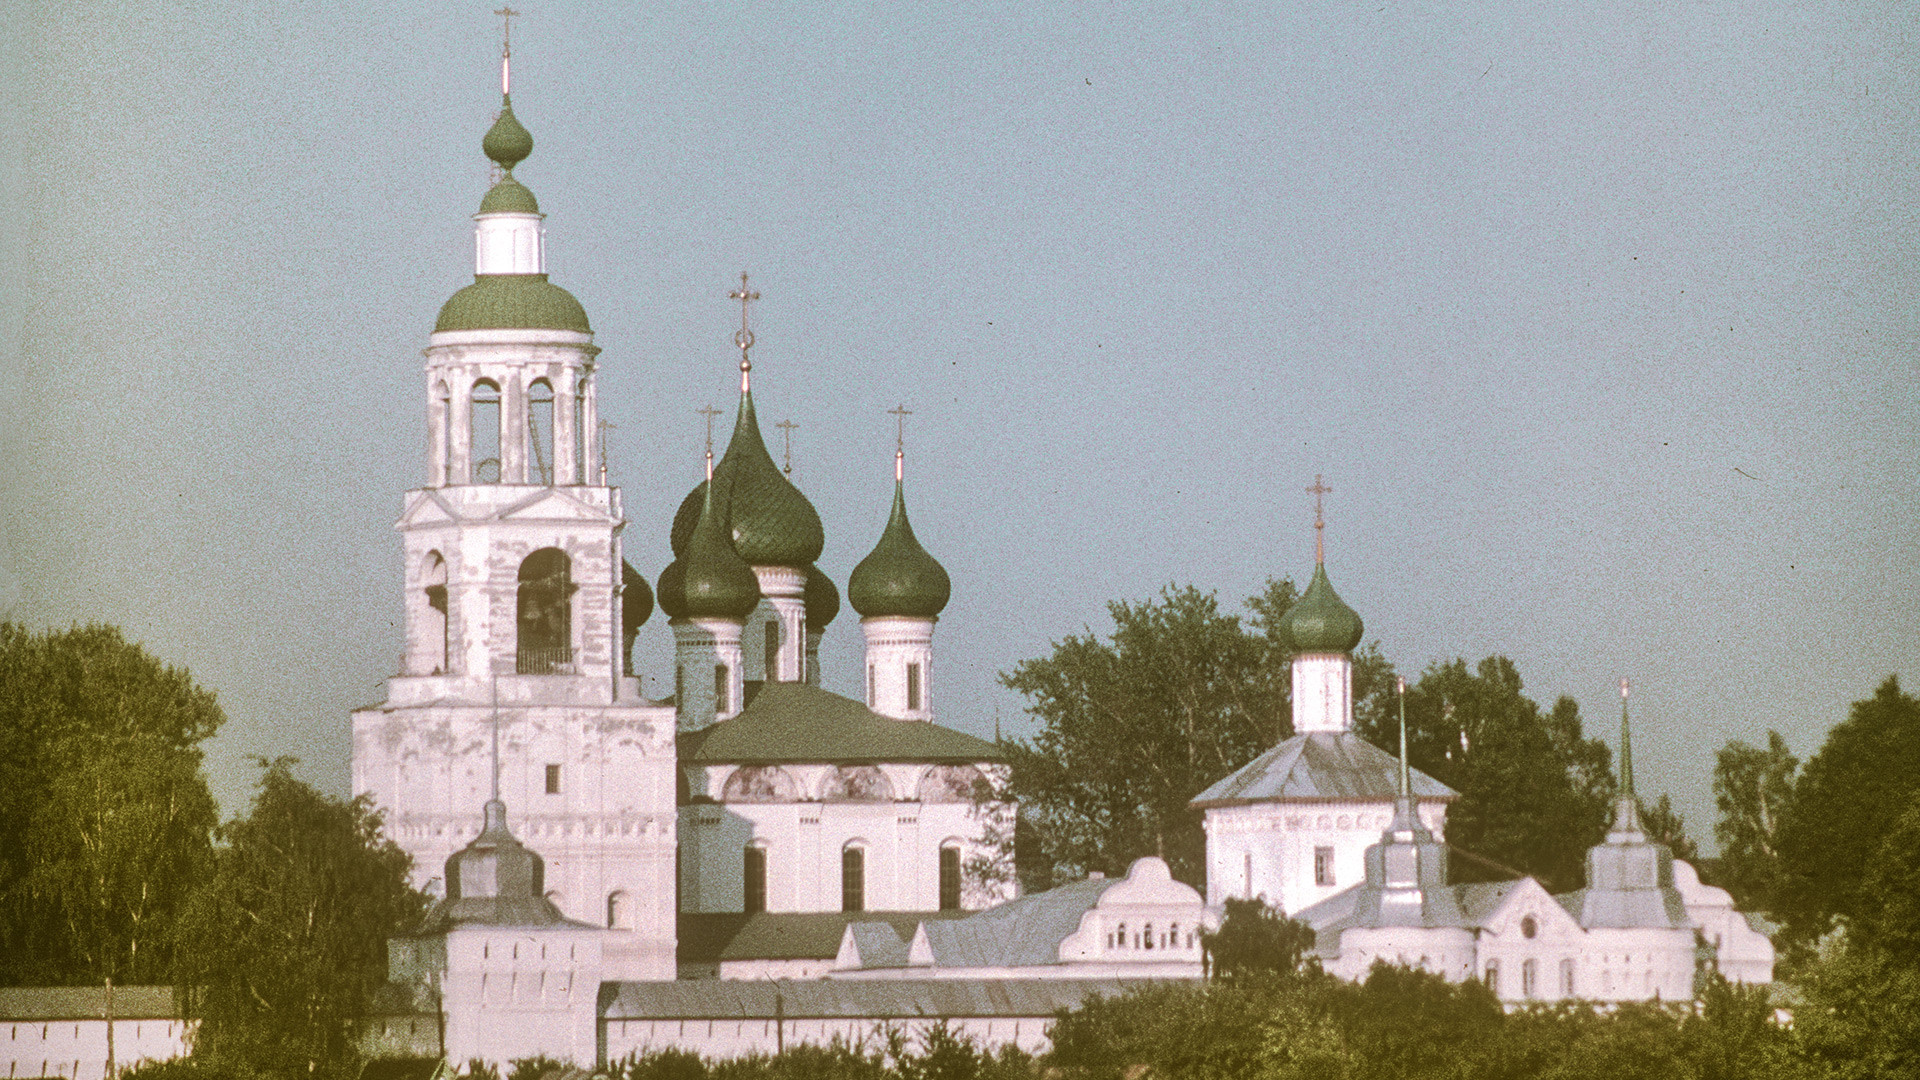 Monasterio de la Presentación de Tolga, vista noroeste desde el río Volga. Desde la izquierda: Campanario y torre de la esquina noroeste; Catedral de la Presentación; Iglesia de San Nicolás sobre la Puerta Santa; Puerta Oeste. 26 de julio de 1997